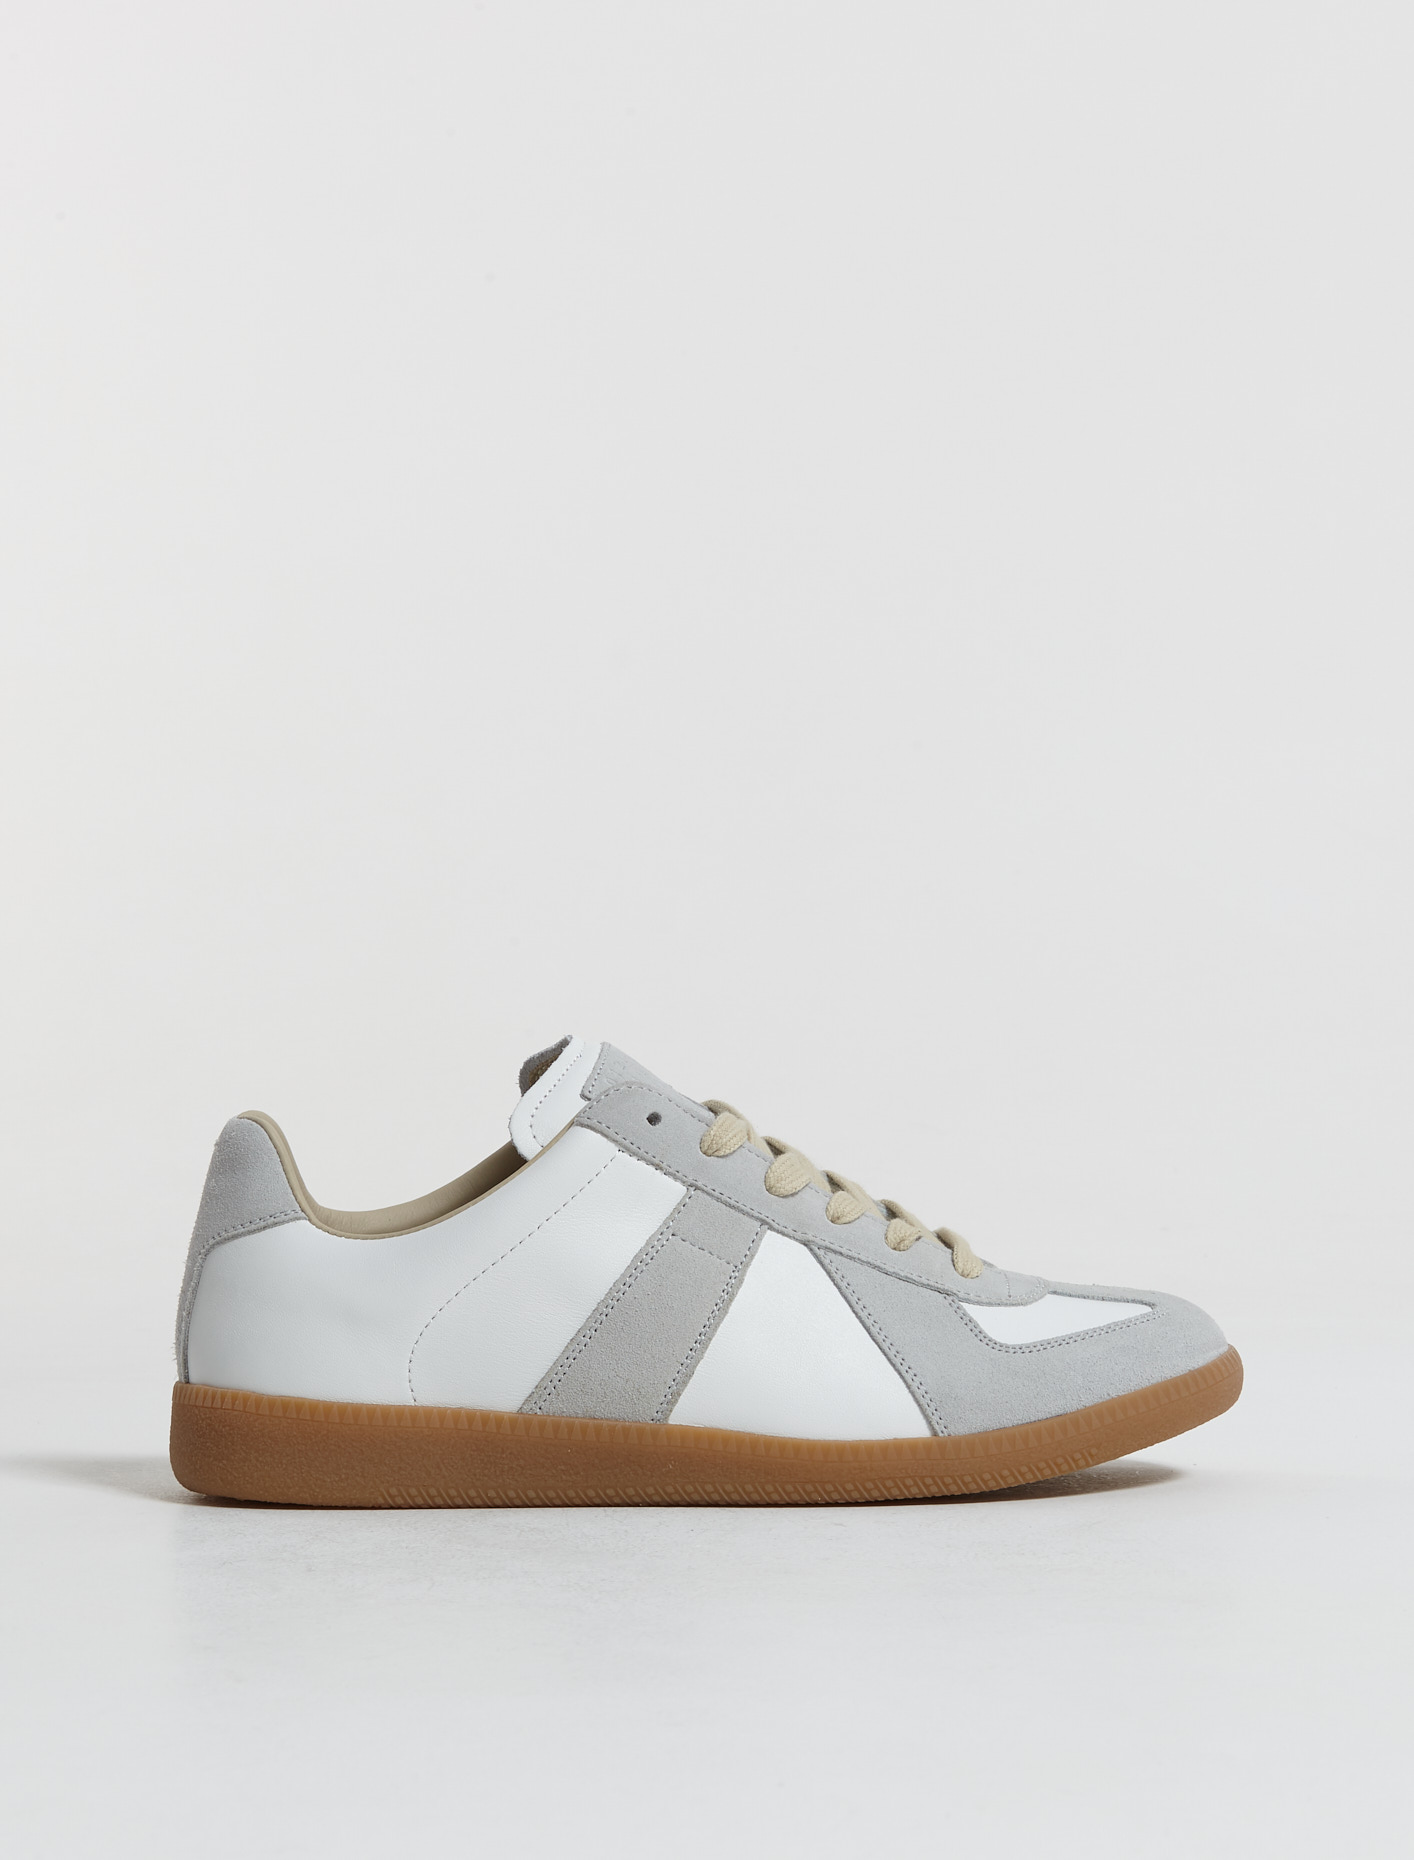 Maison Margiela Replica Sneakers in Off White | Voo Store Berlin |  Worldwide Shipping